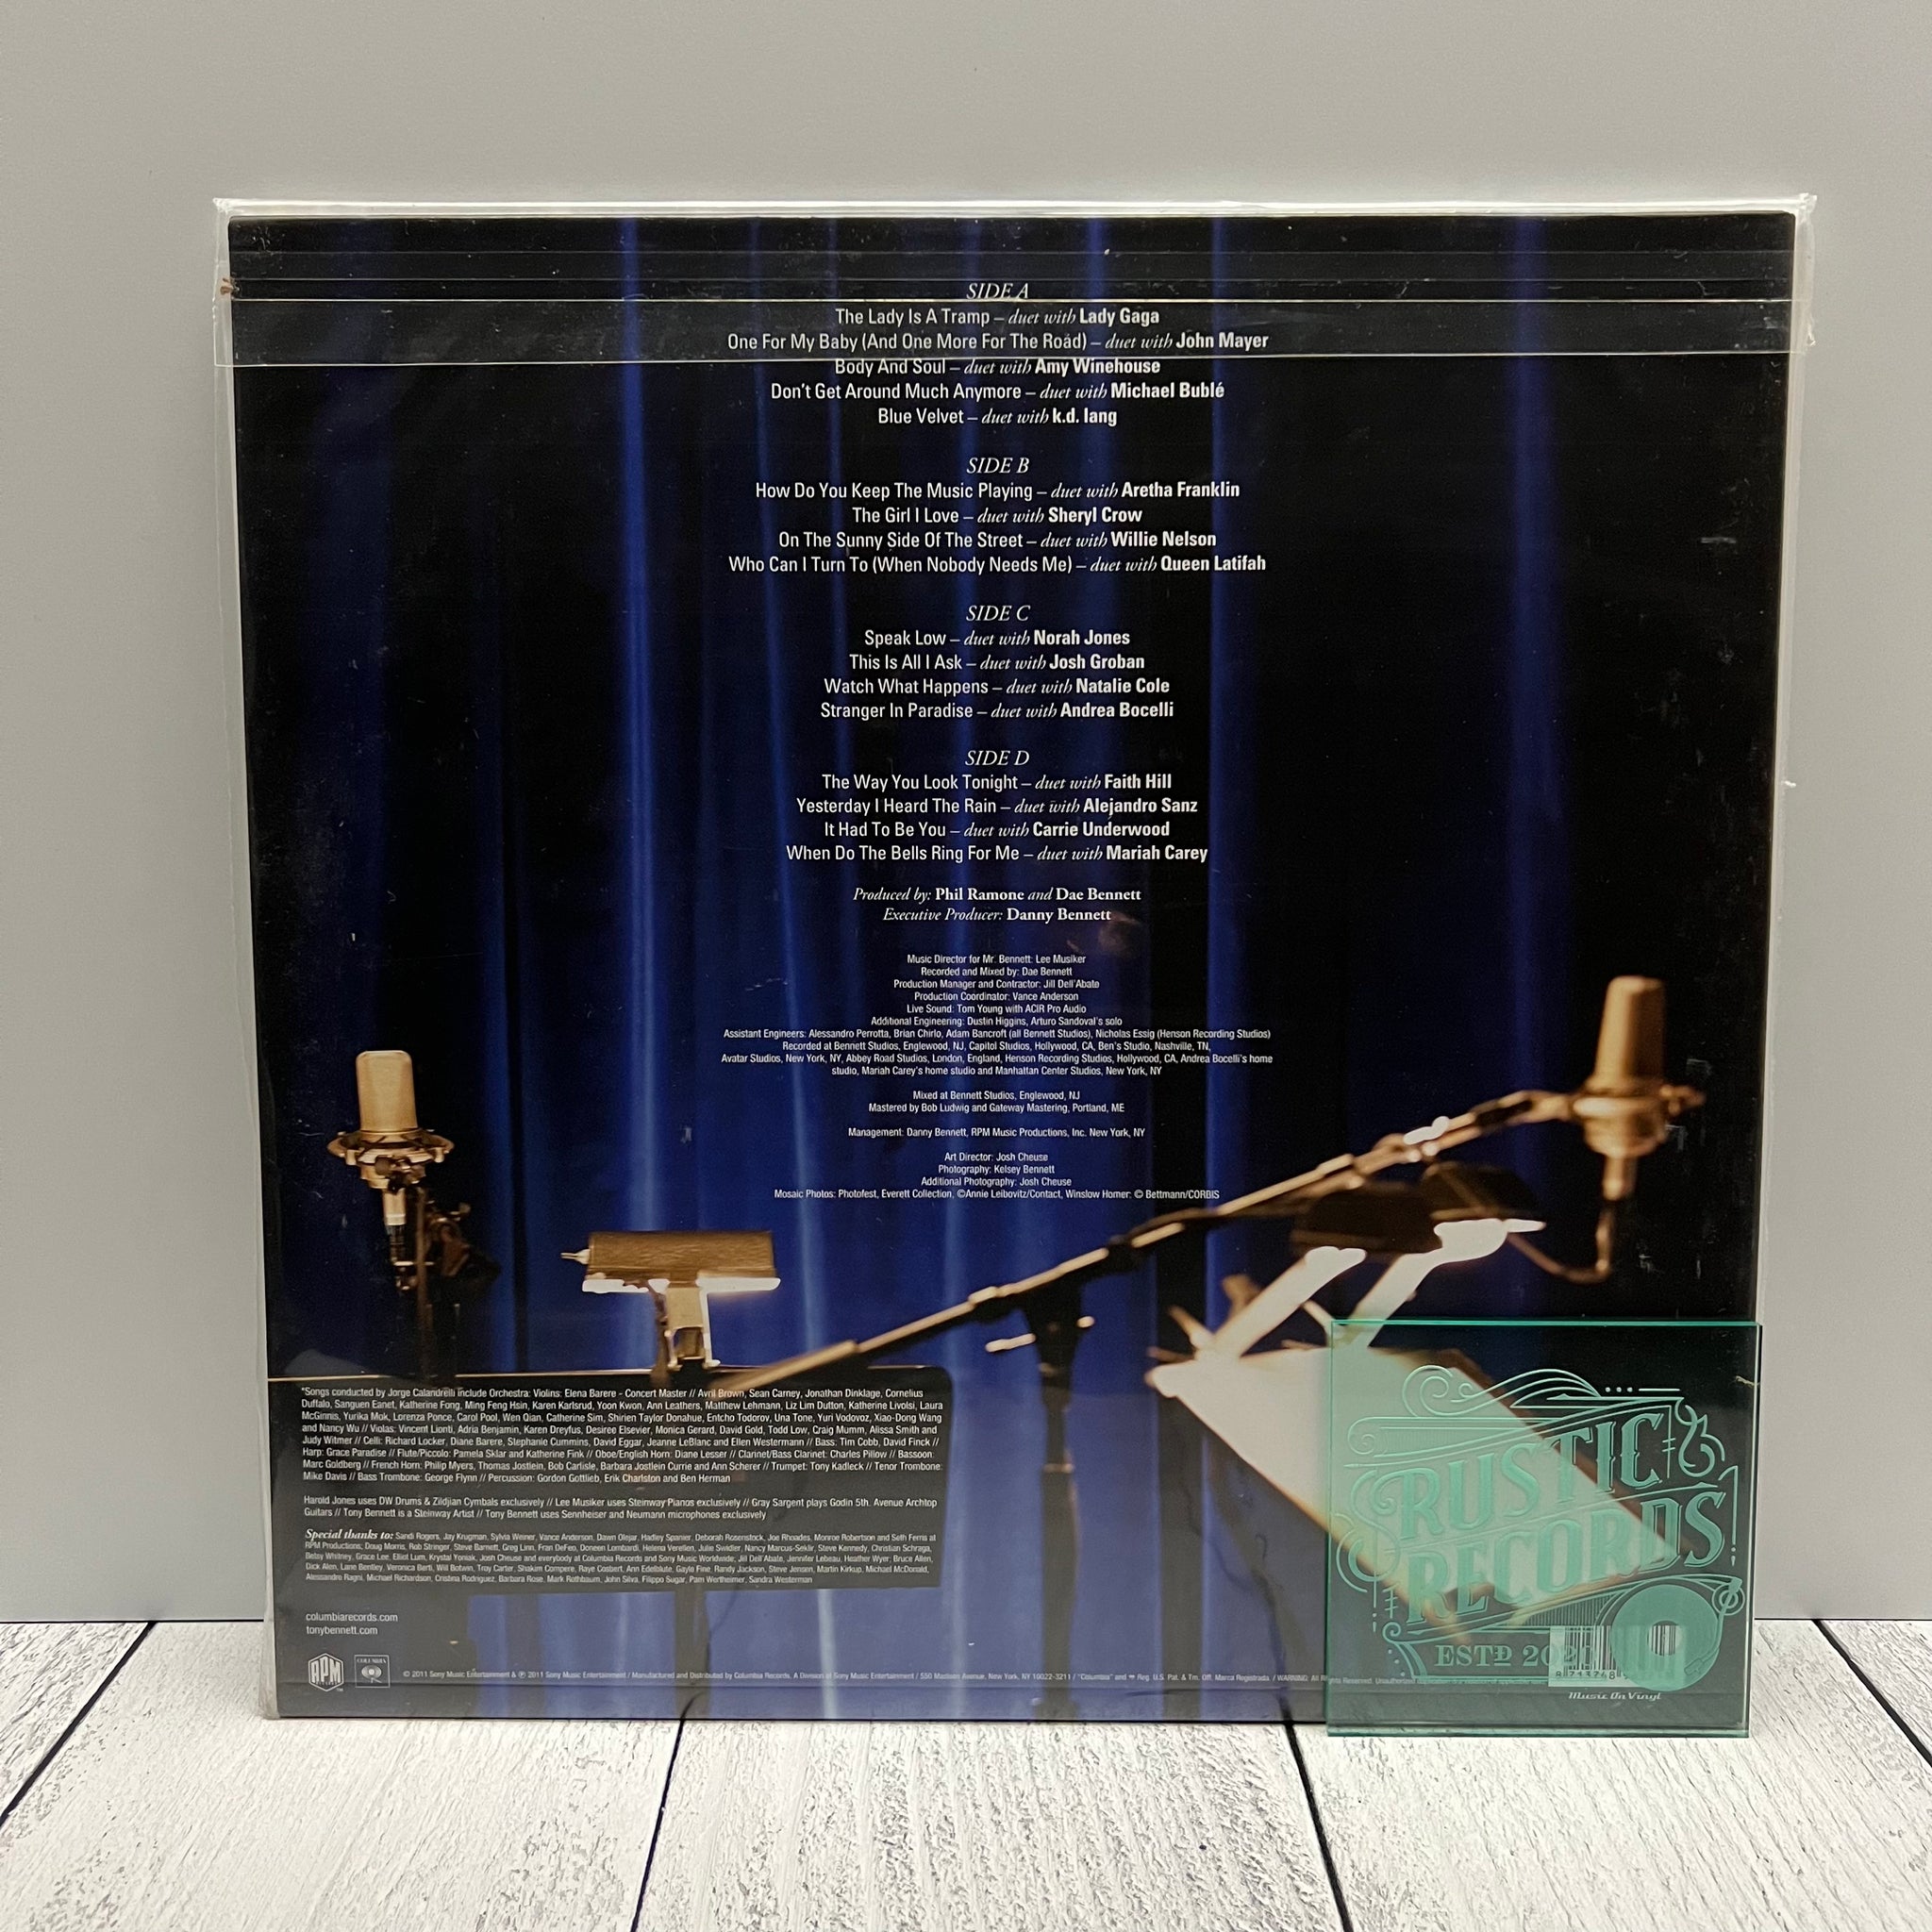 Tony Bennett - Duets II (Music On Vinyl)